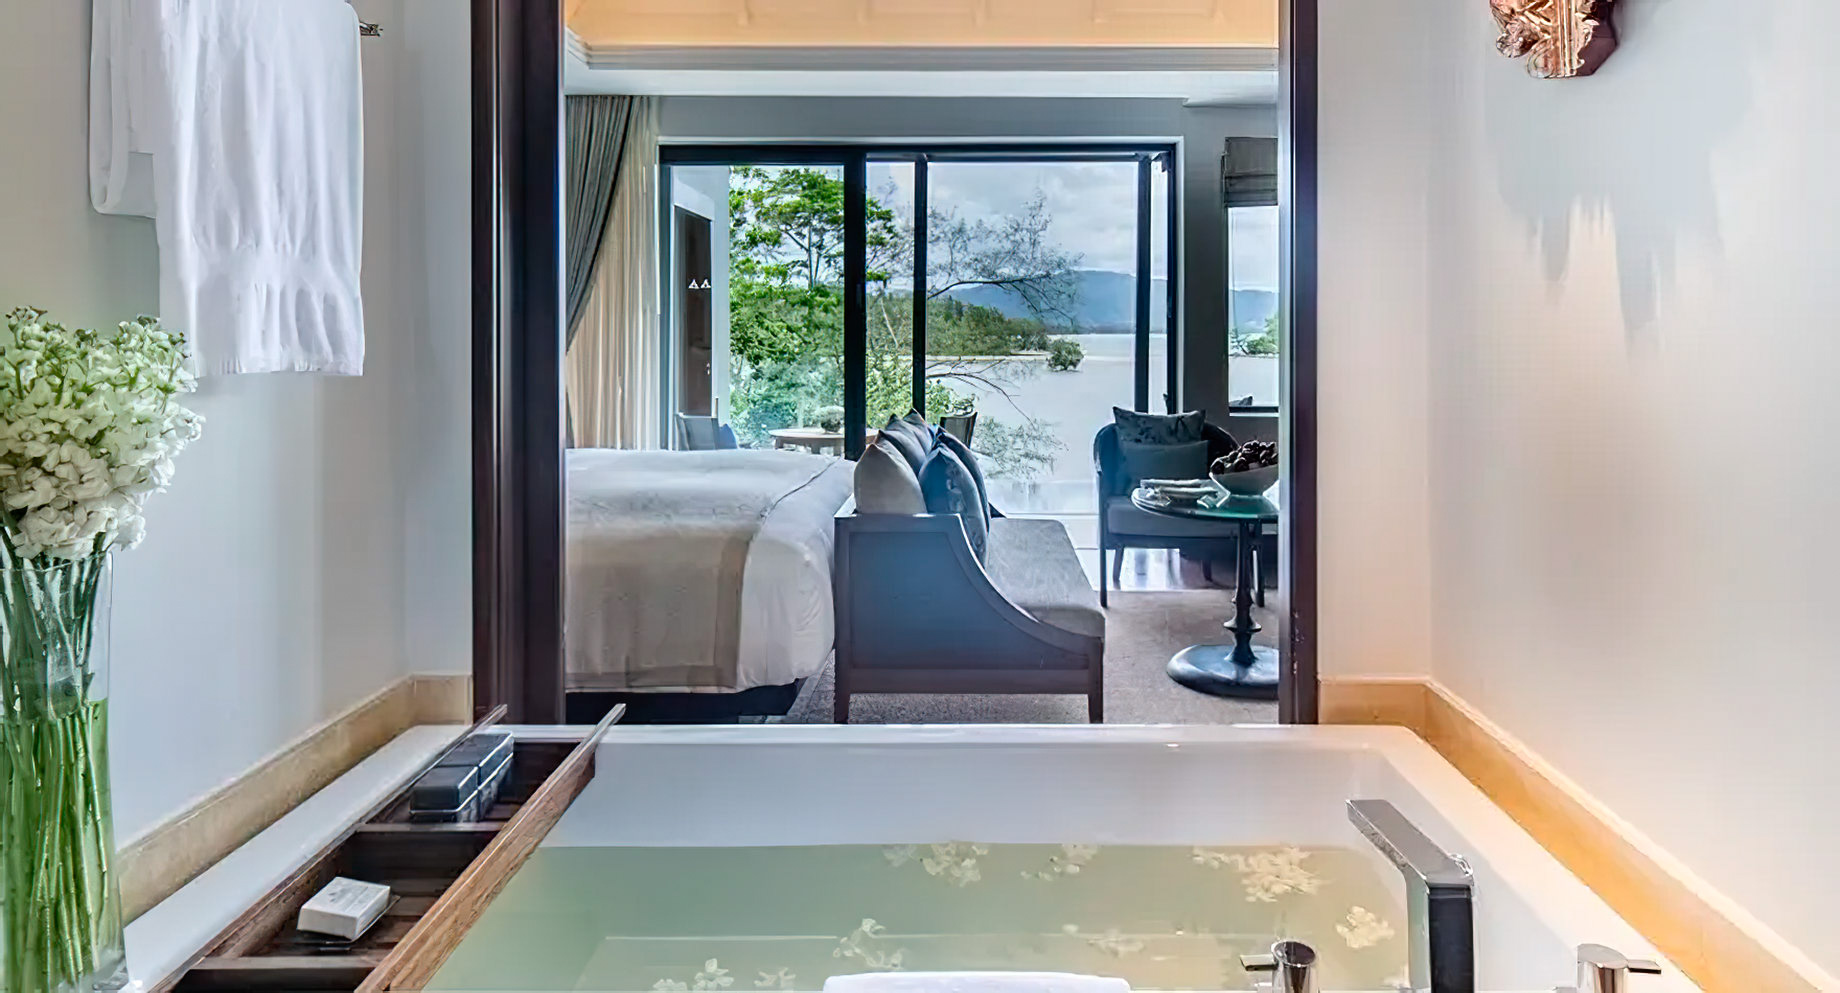 Anantara Layan Phuket Resort & Residences – Thailand – Grand Sea View Pool Suite